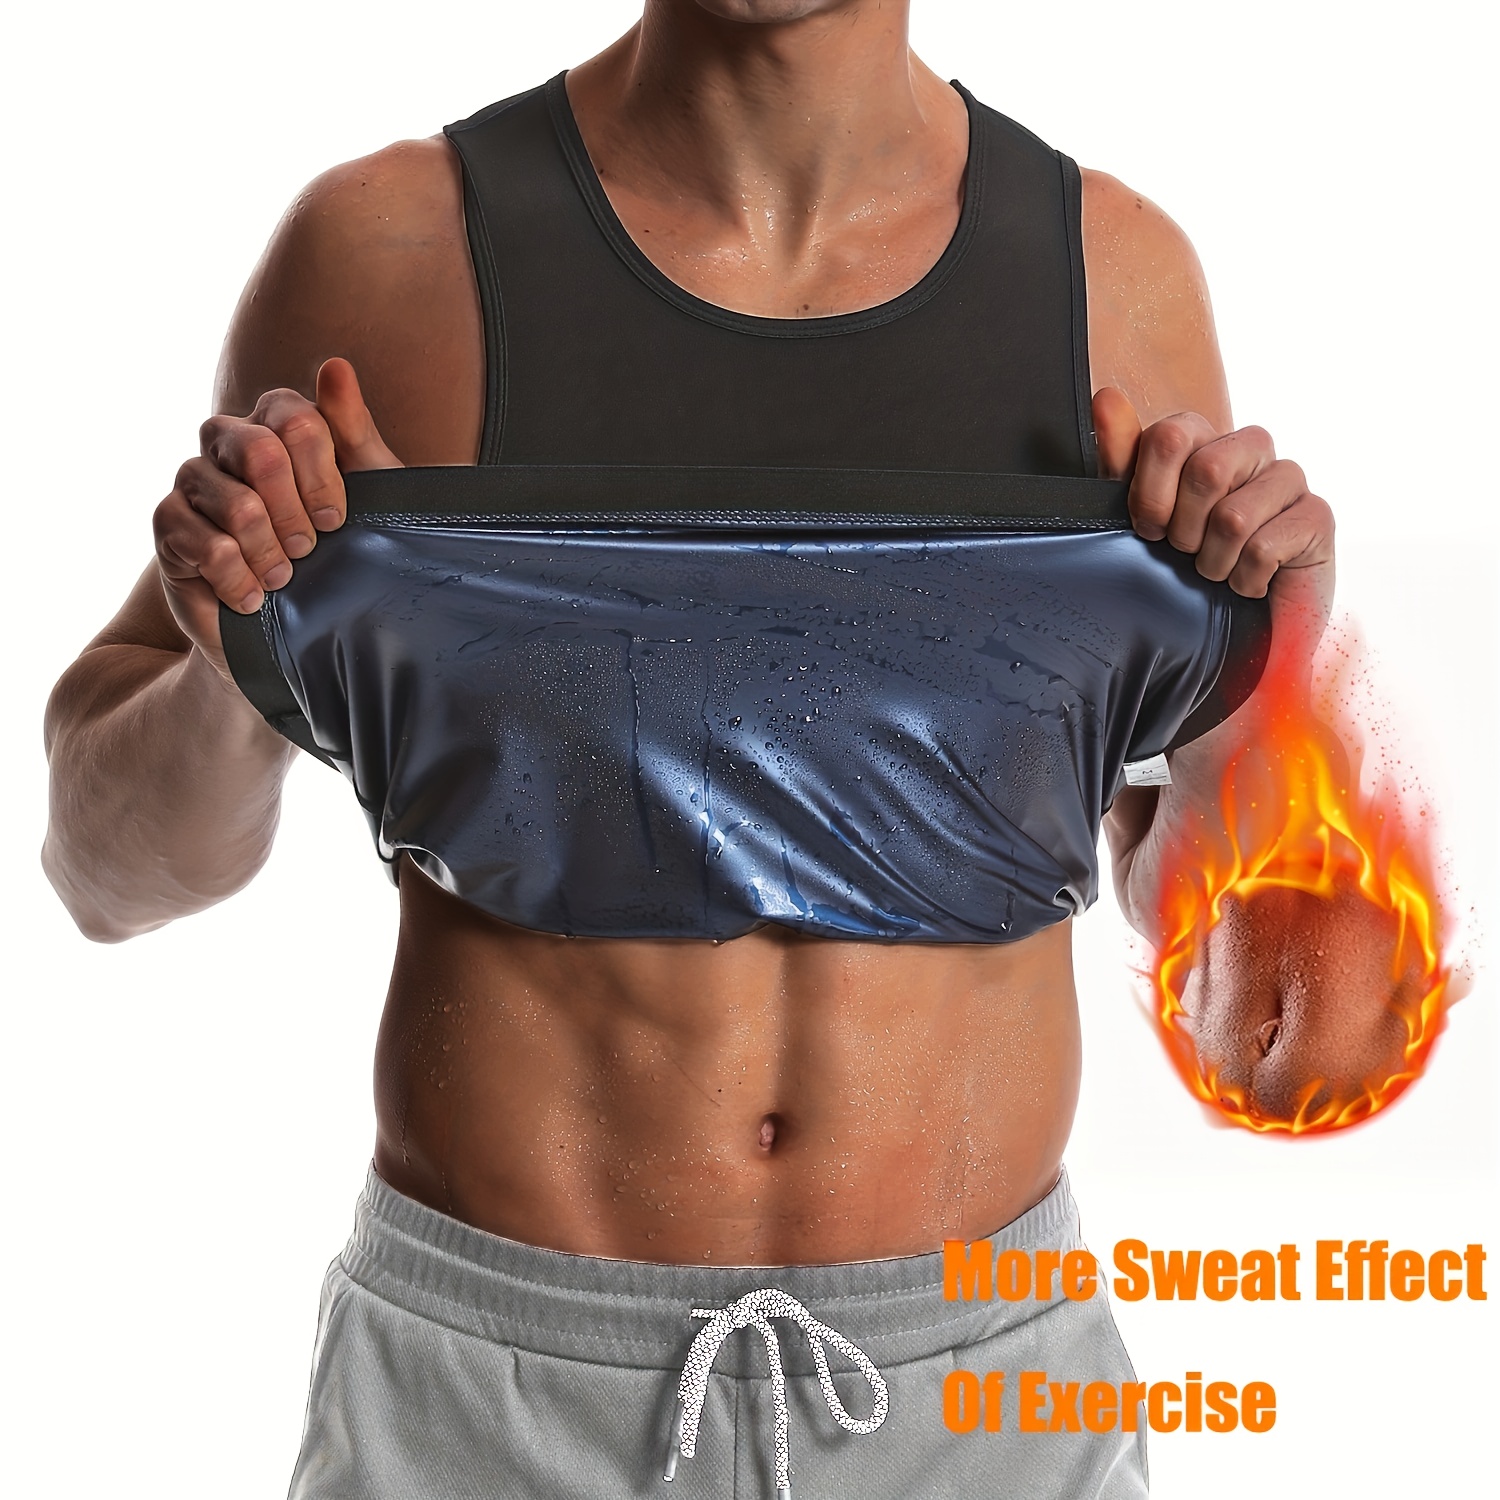 Sauna Suit For Men, Waist Trainer, Sweat Workout Trimmer, Sauna Slimming  Belt